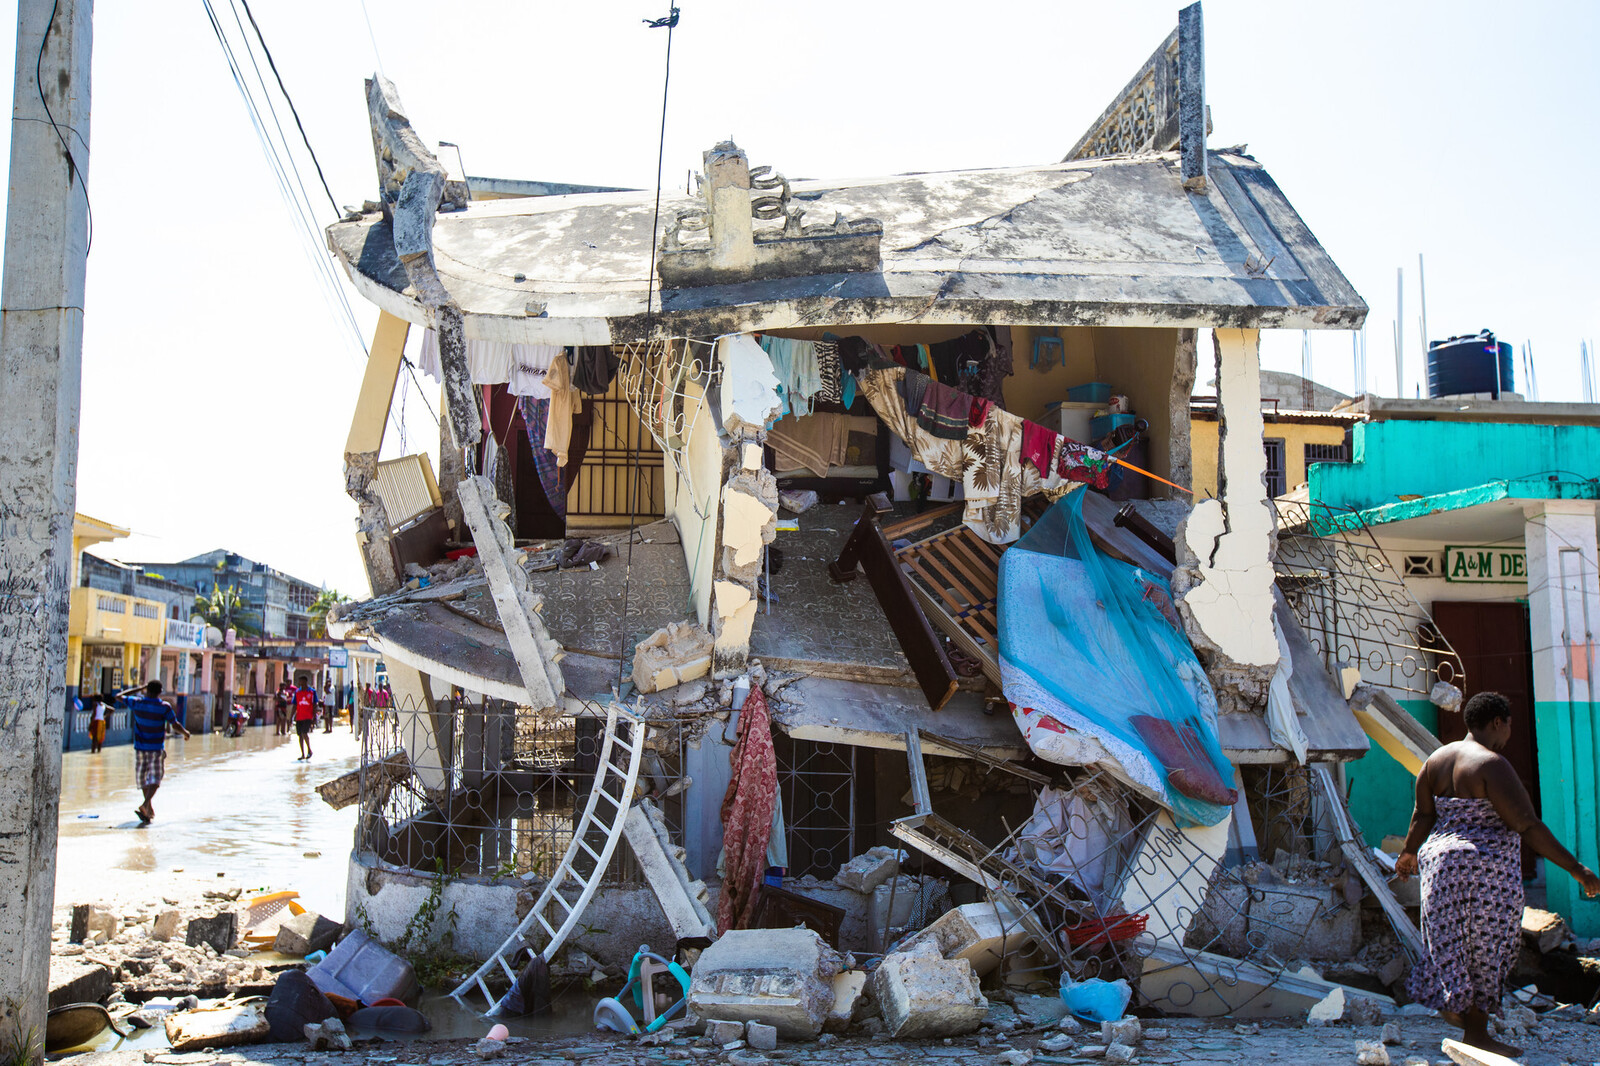 Ein zerstörtes Haus in Haiti nach dem Erdbeben in 2021 